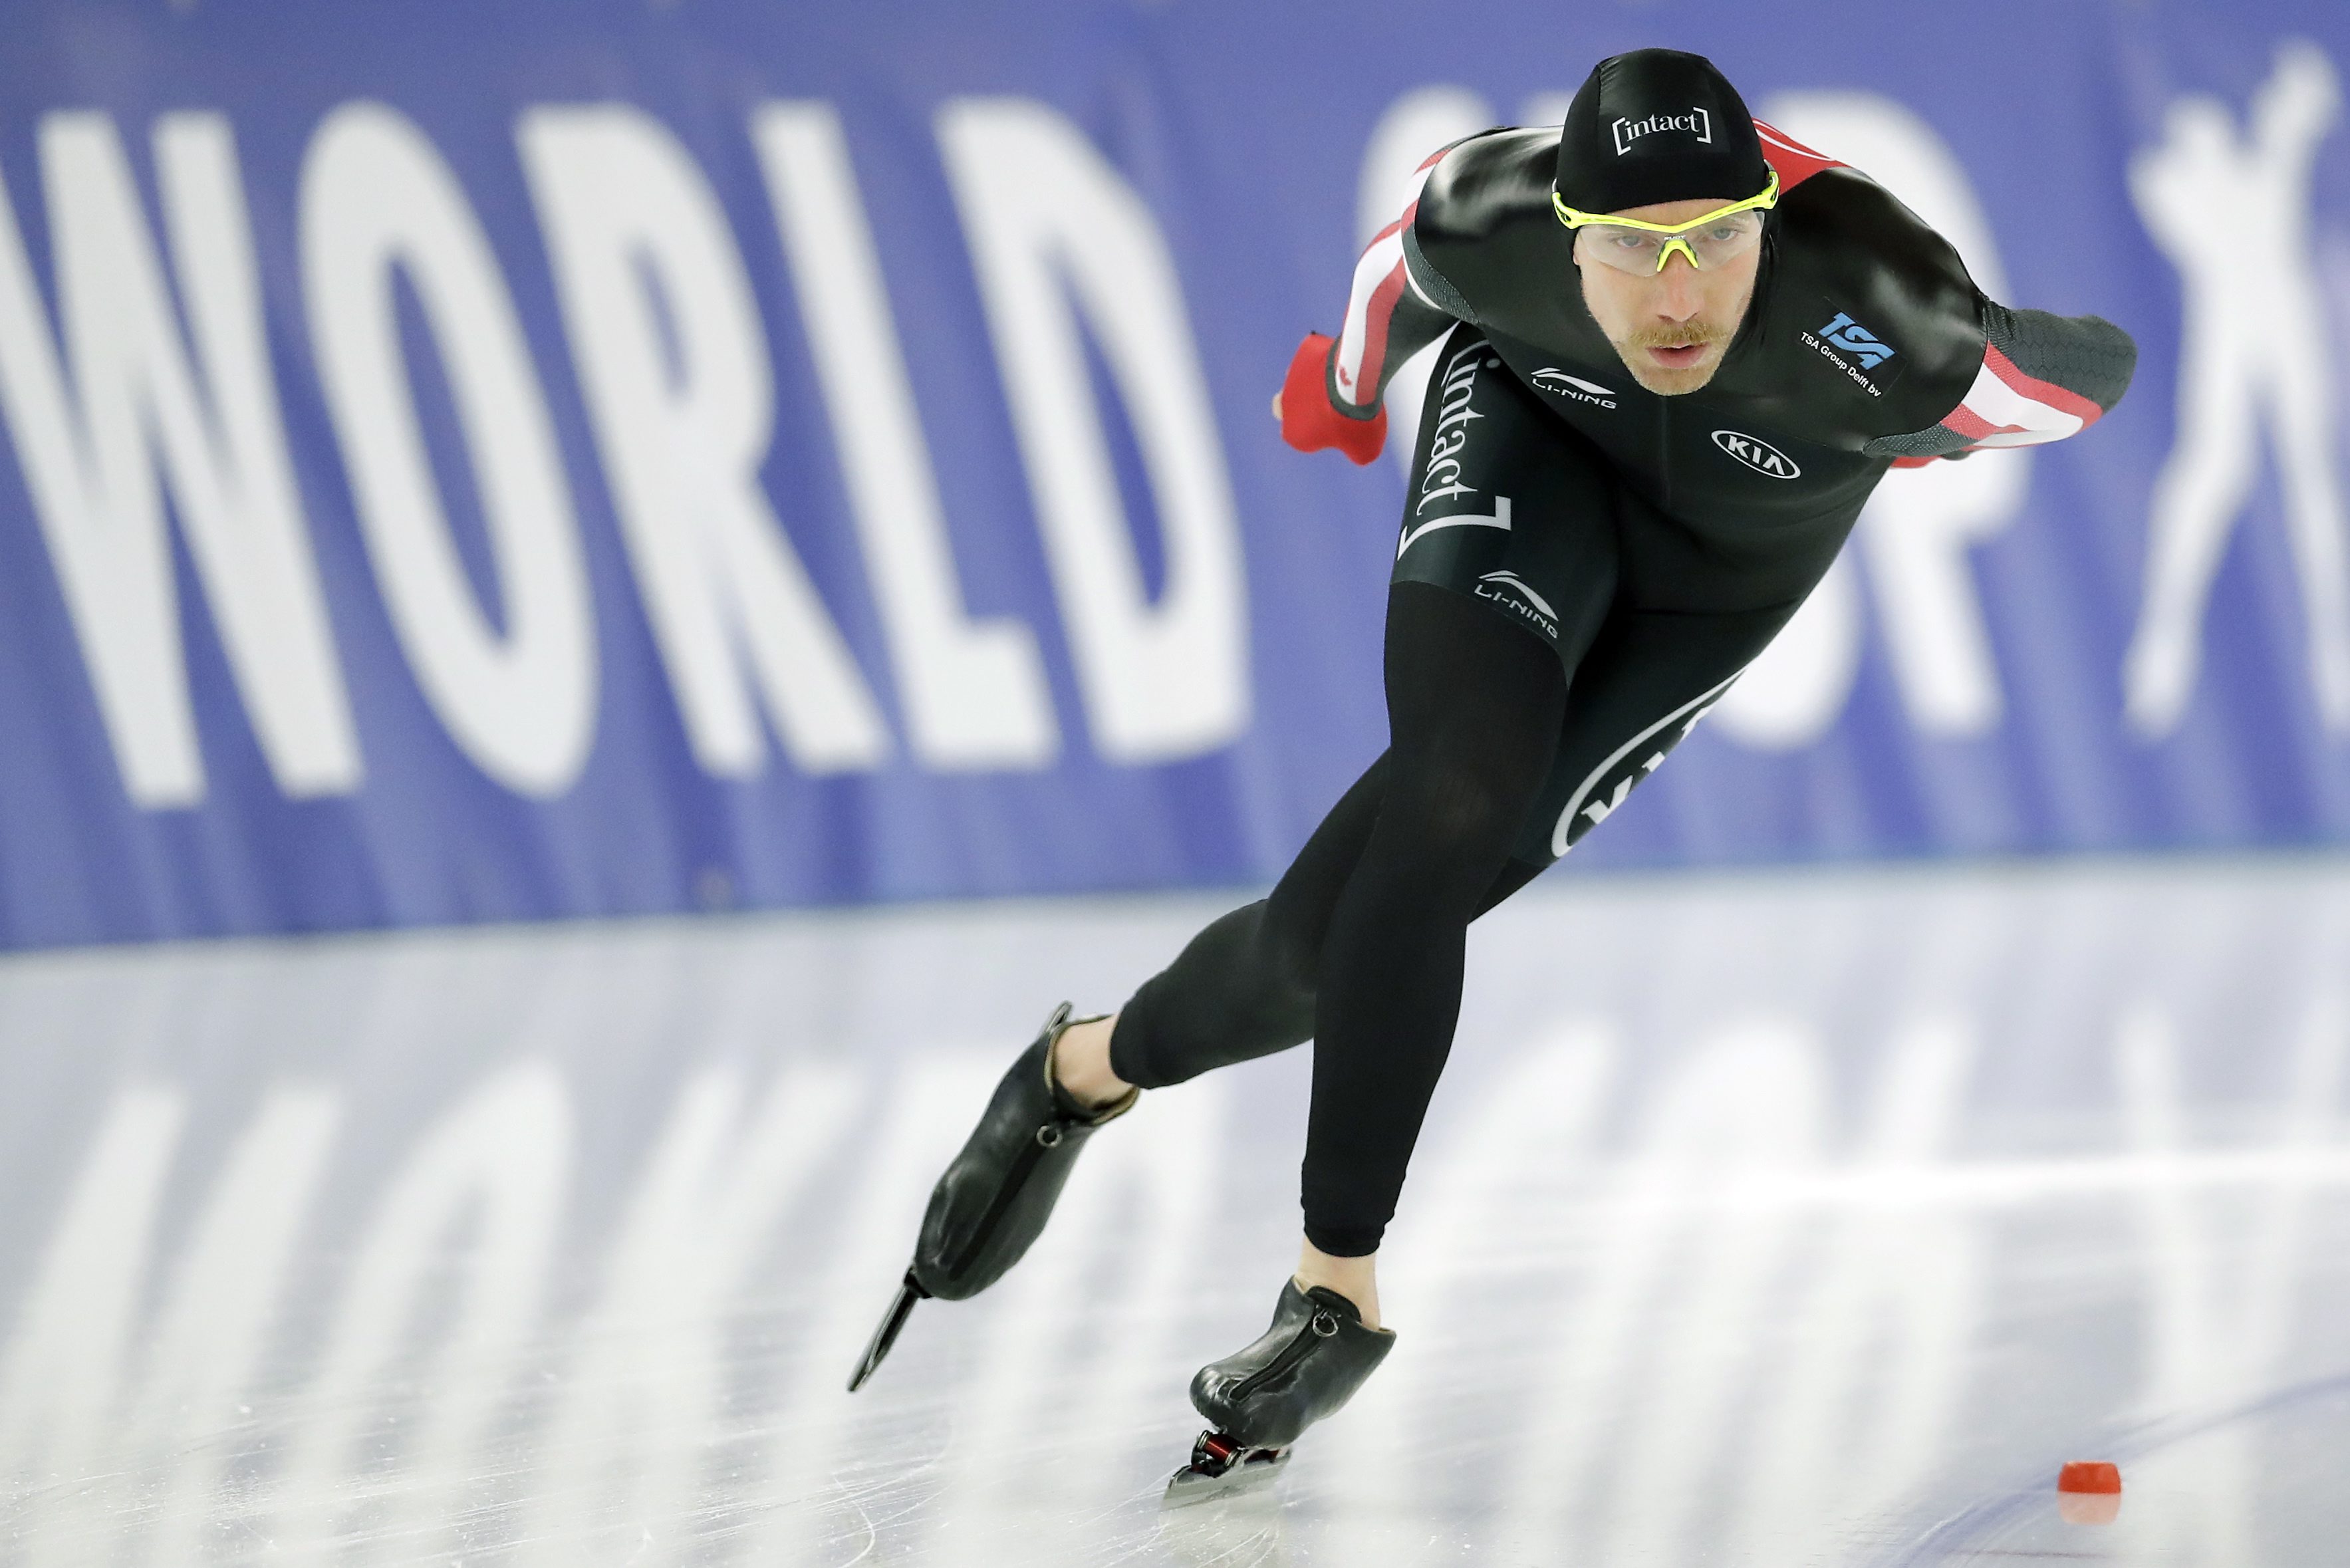 Le Canadien Ted-Jan Bloemen survole la piste lors de l'épreuve 5000 m de la Coupe du monde de patinage de vitesse sur longue piste de Berlin, en Allemagne, le 28 janvier 2017. (AP Photo/Michael Sohn)